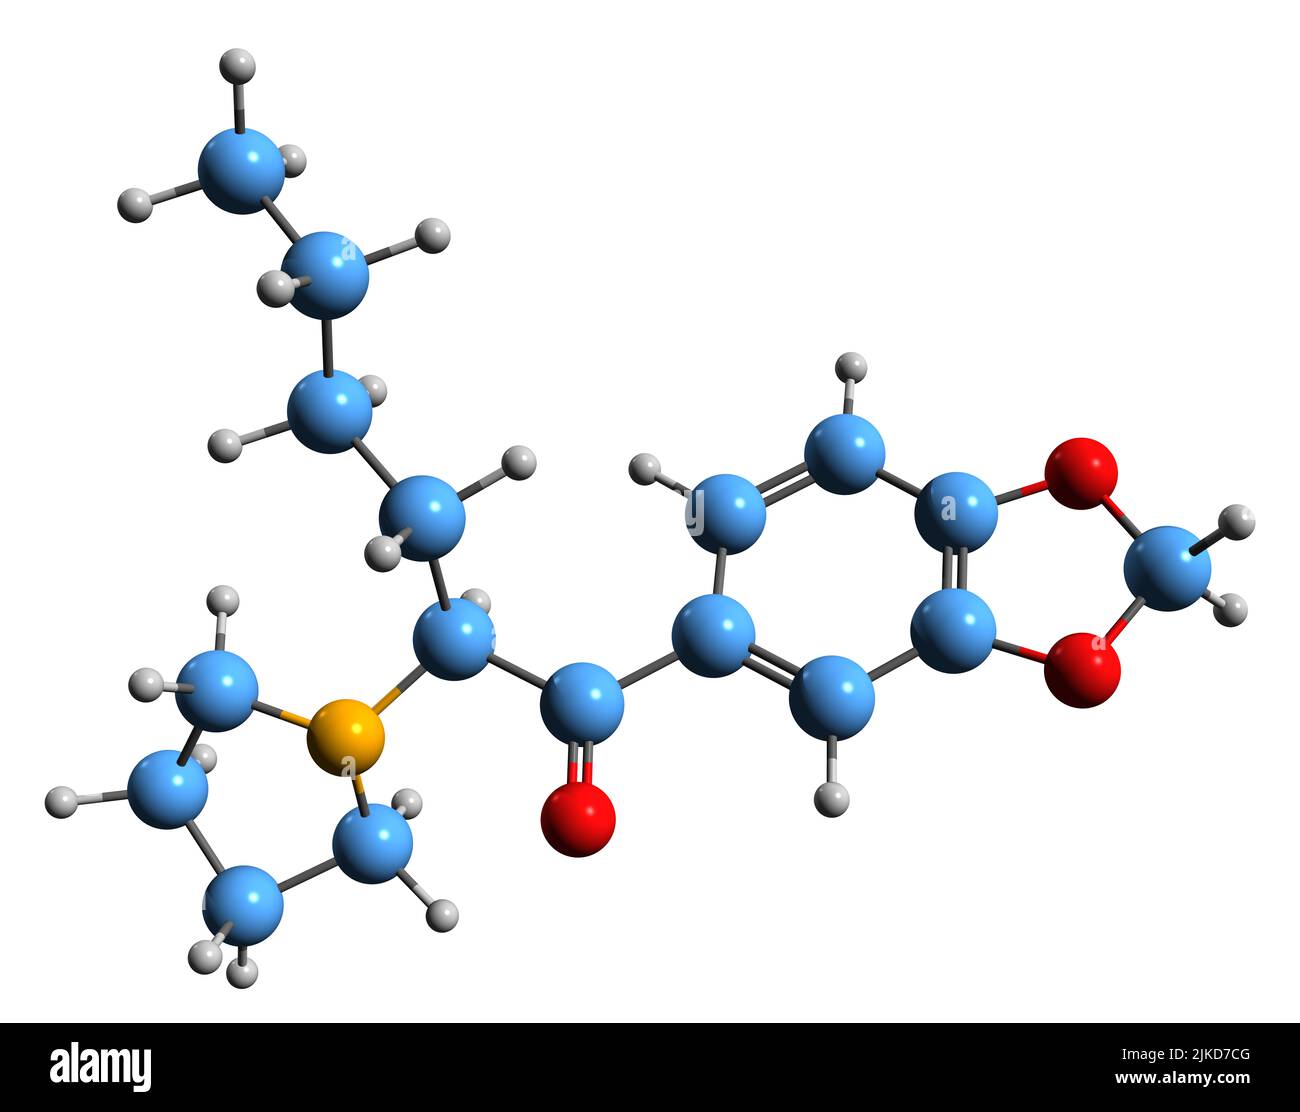 3D Bild der Skelettformel von MDPHP - molekularchemische Struktur des Stimulans der Cathinone-Klasse isoliert auf weißem Hintergrund Stockfoto